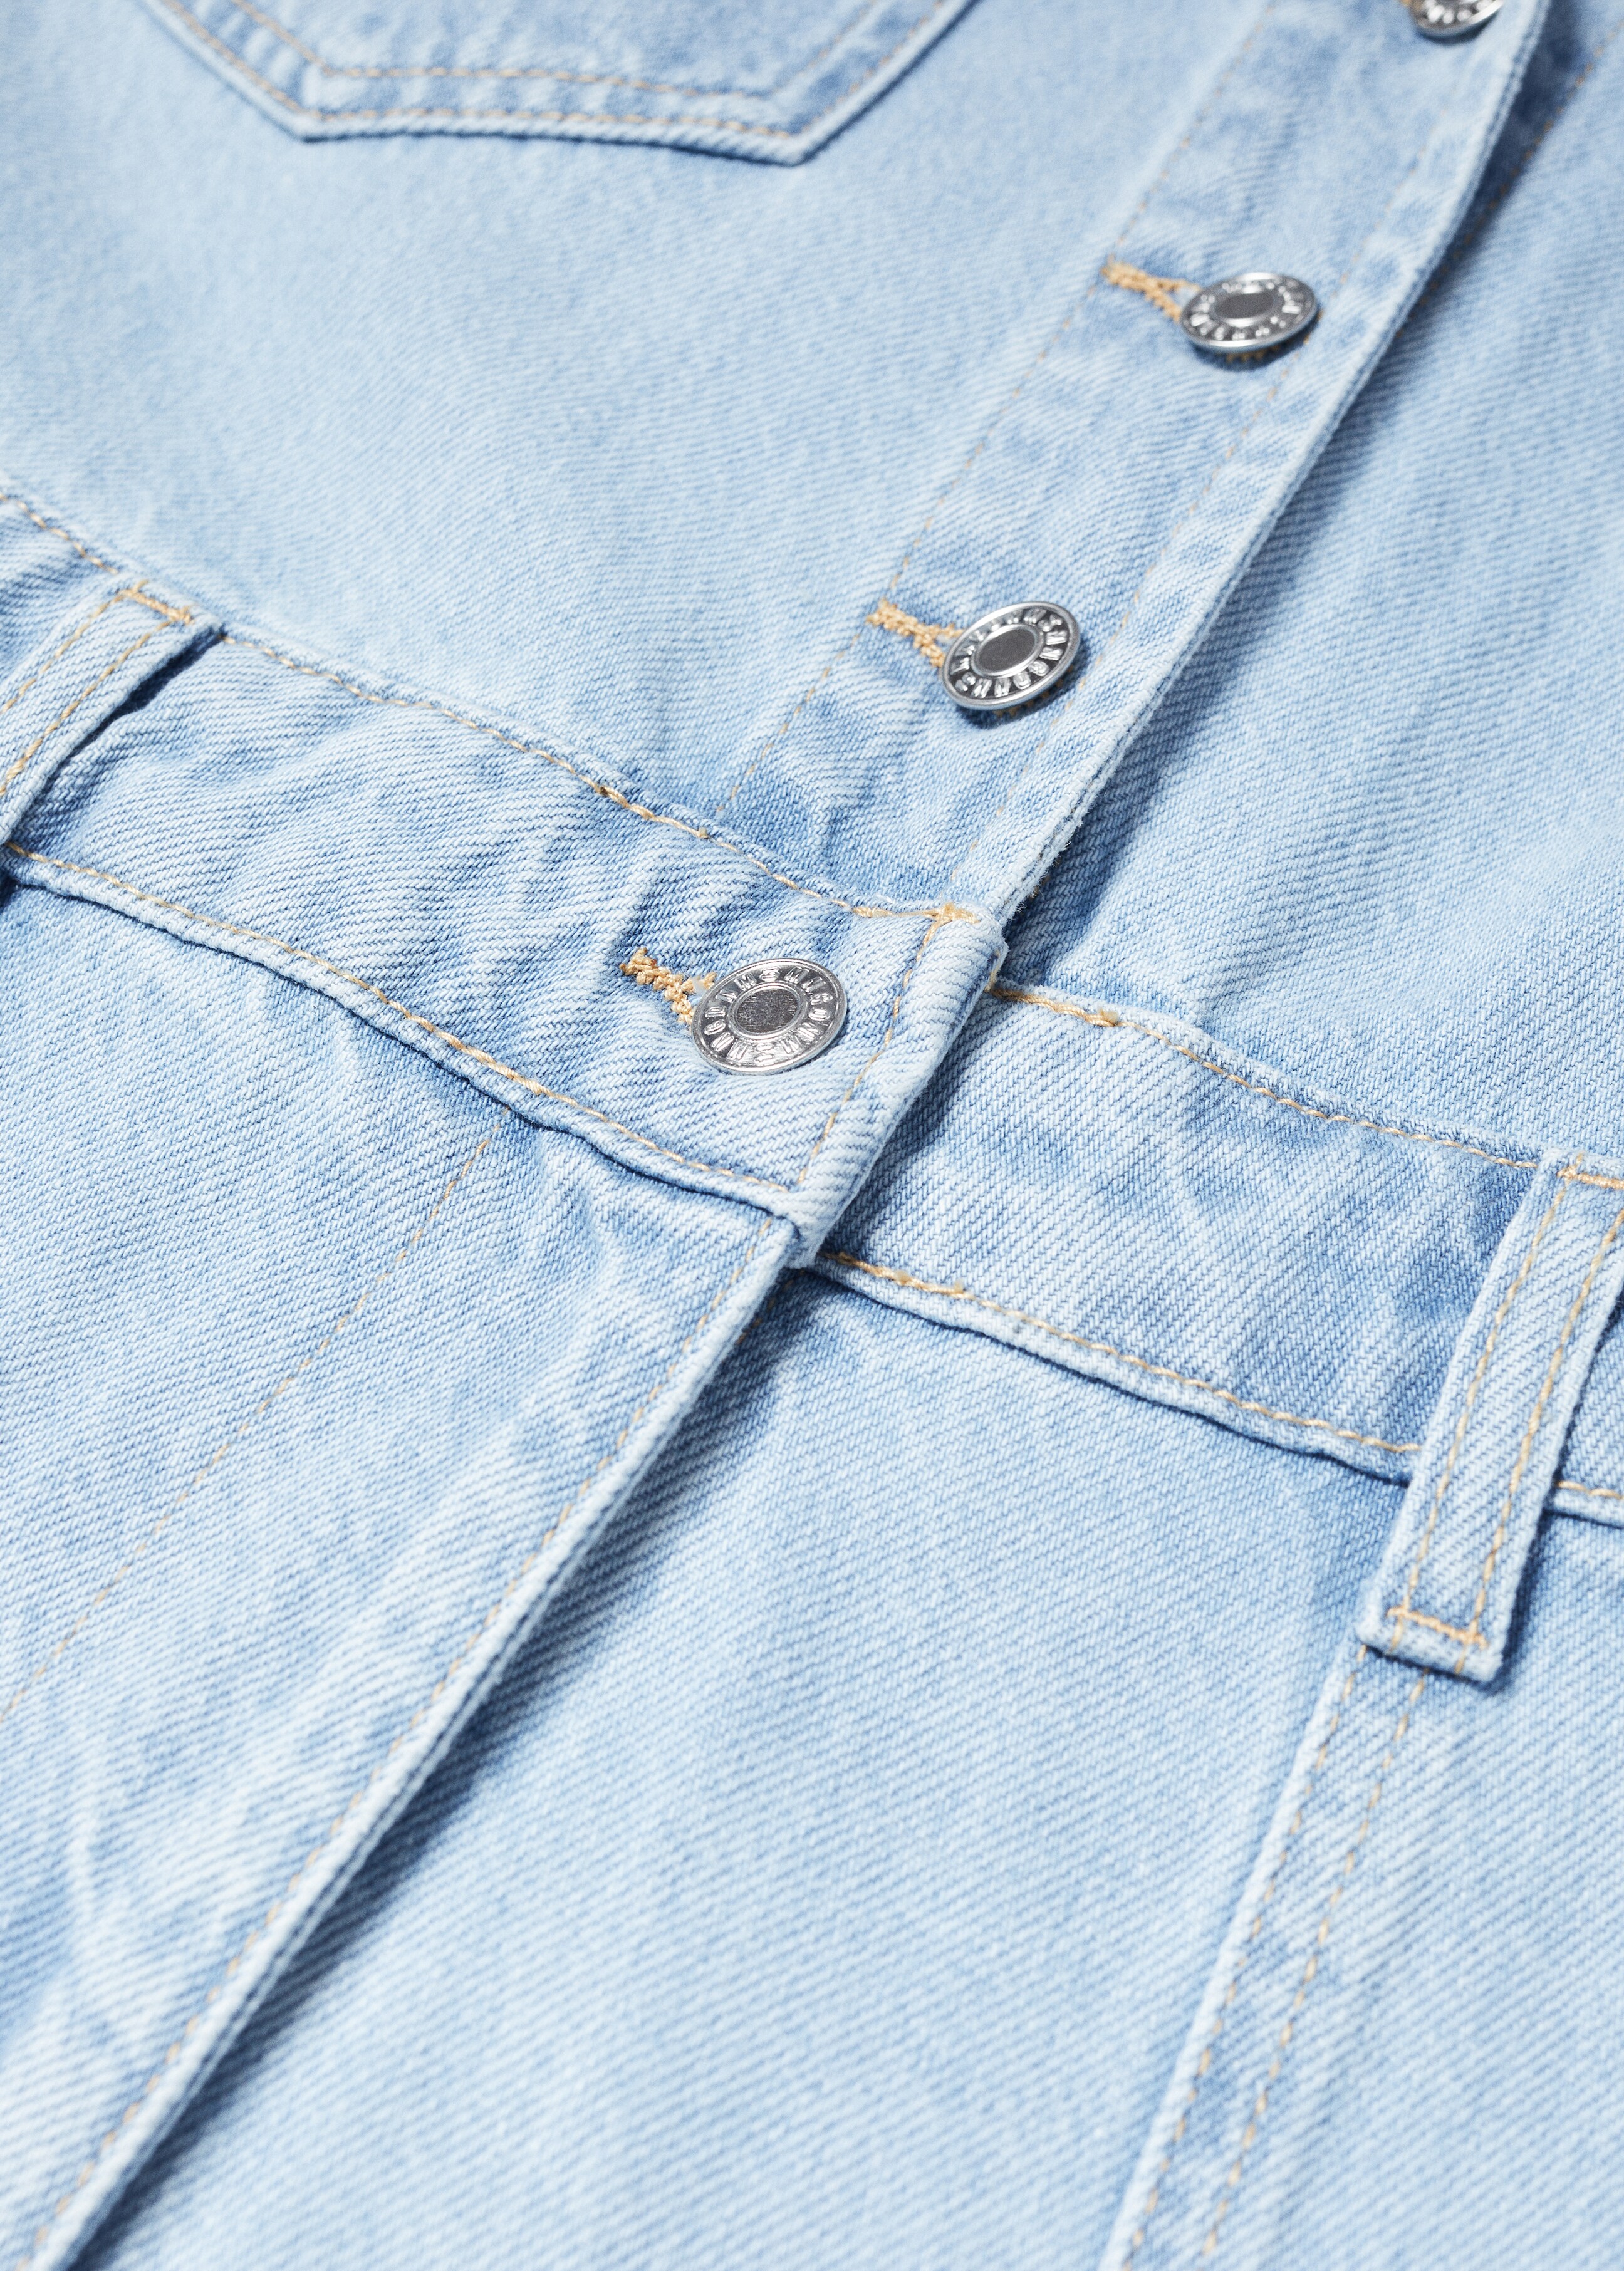 Cotton denim jumpsuit - Details of the article 8